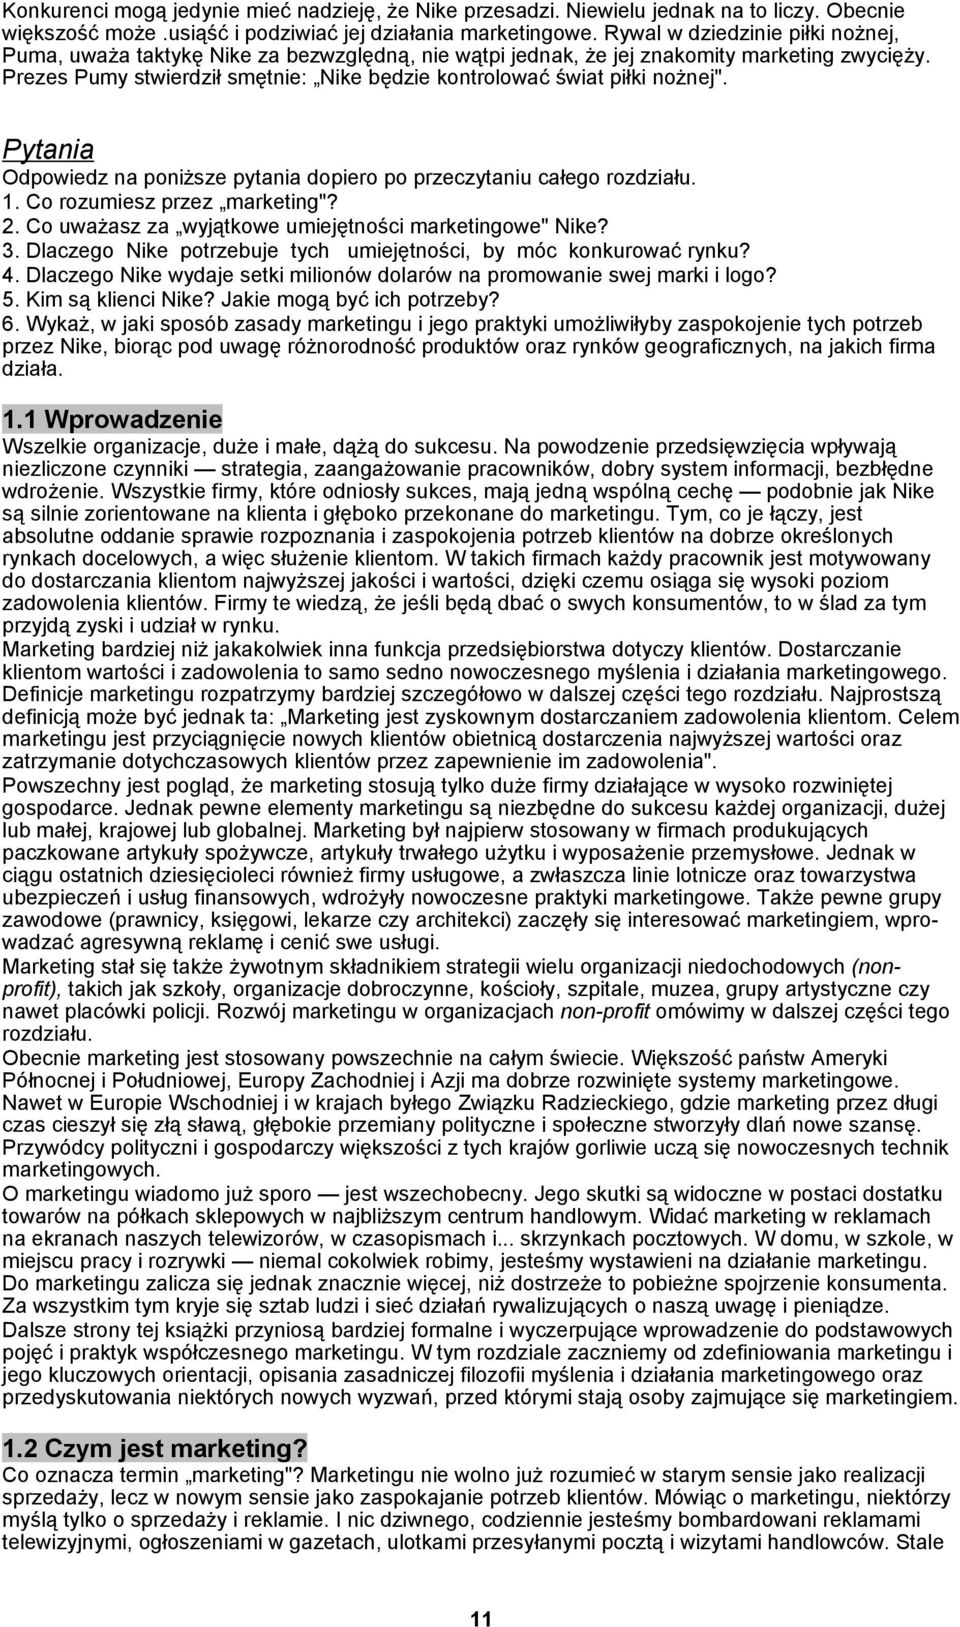 MARKETING PODRĘCZNIK EUROPEJSKI - PDF Darmowe pobieranie